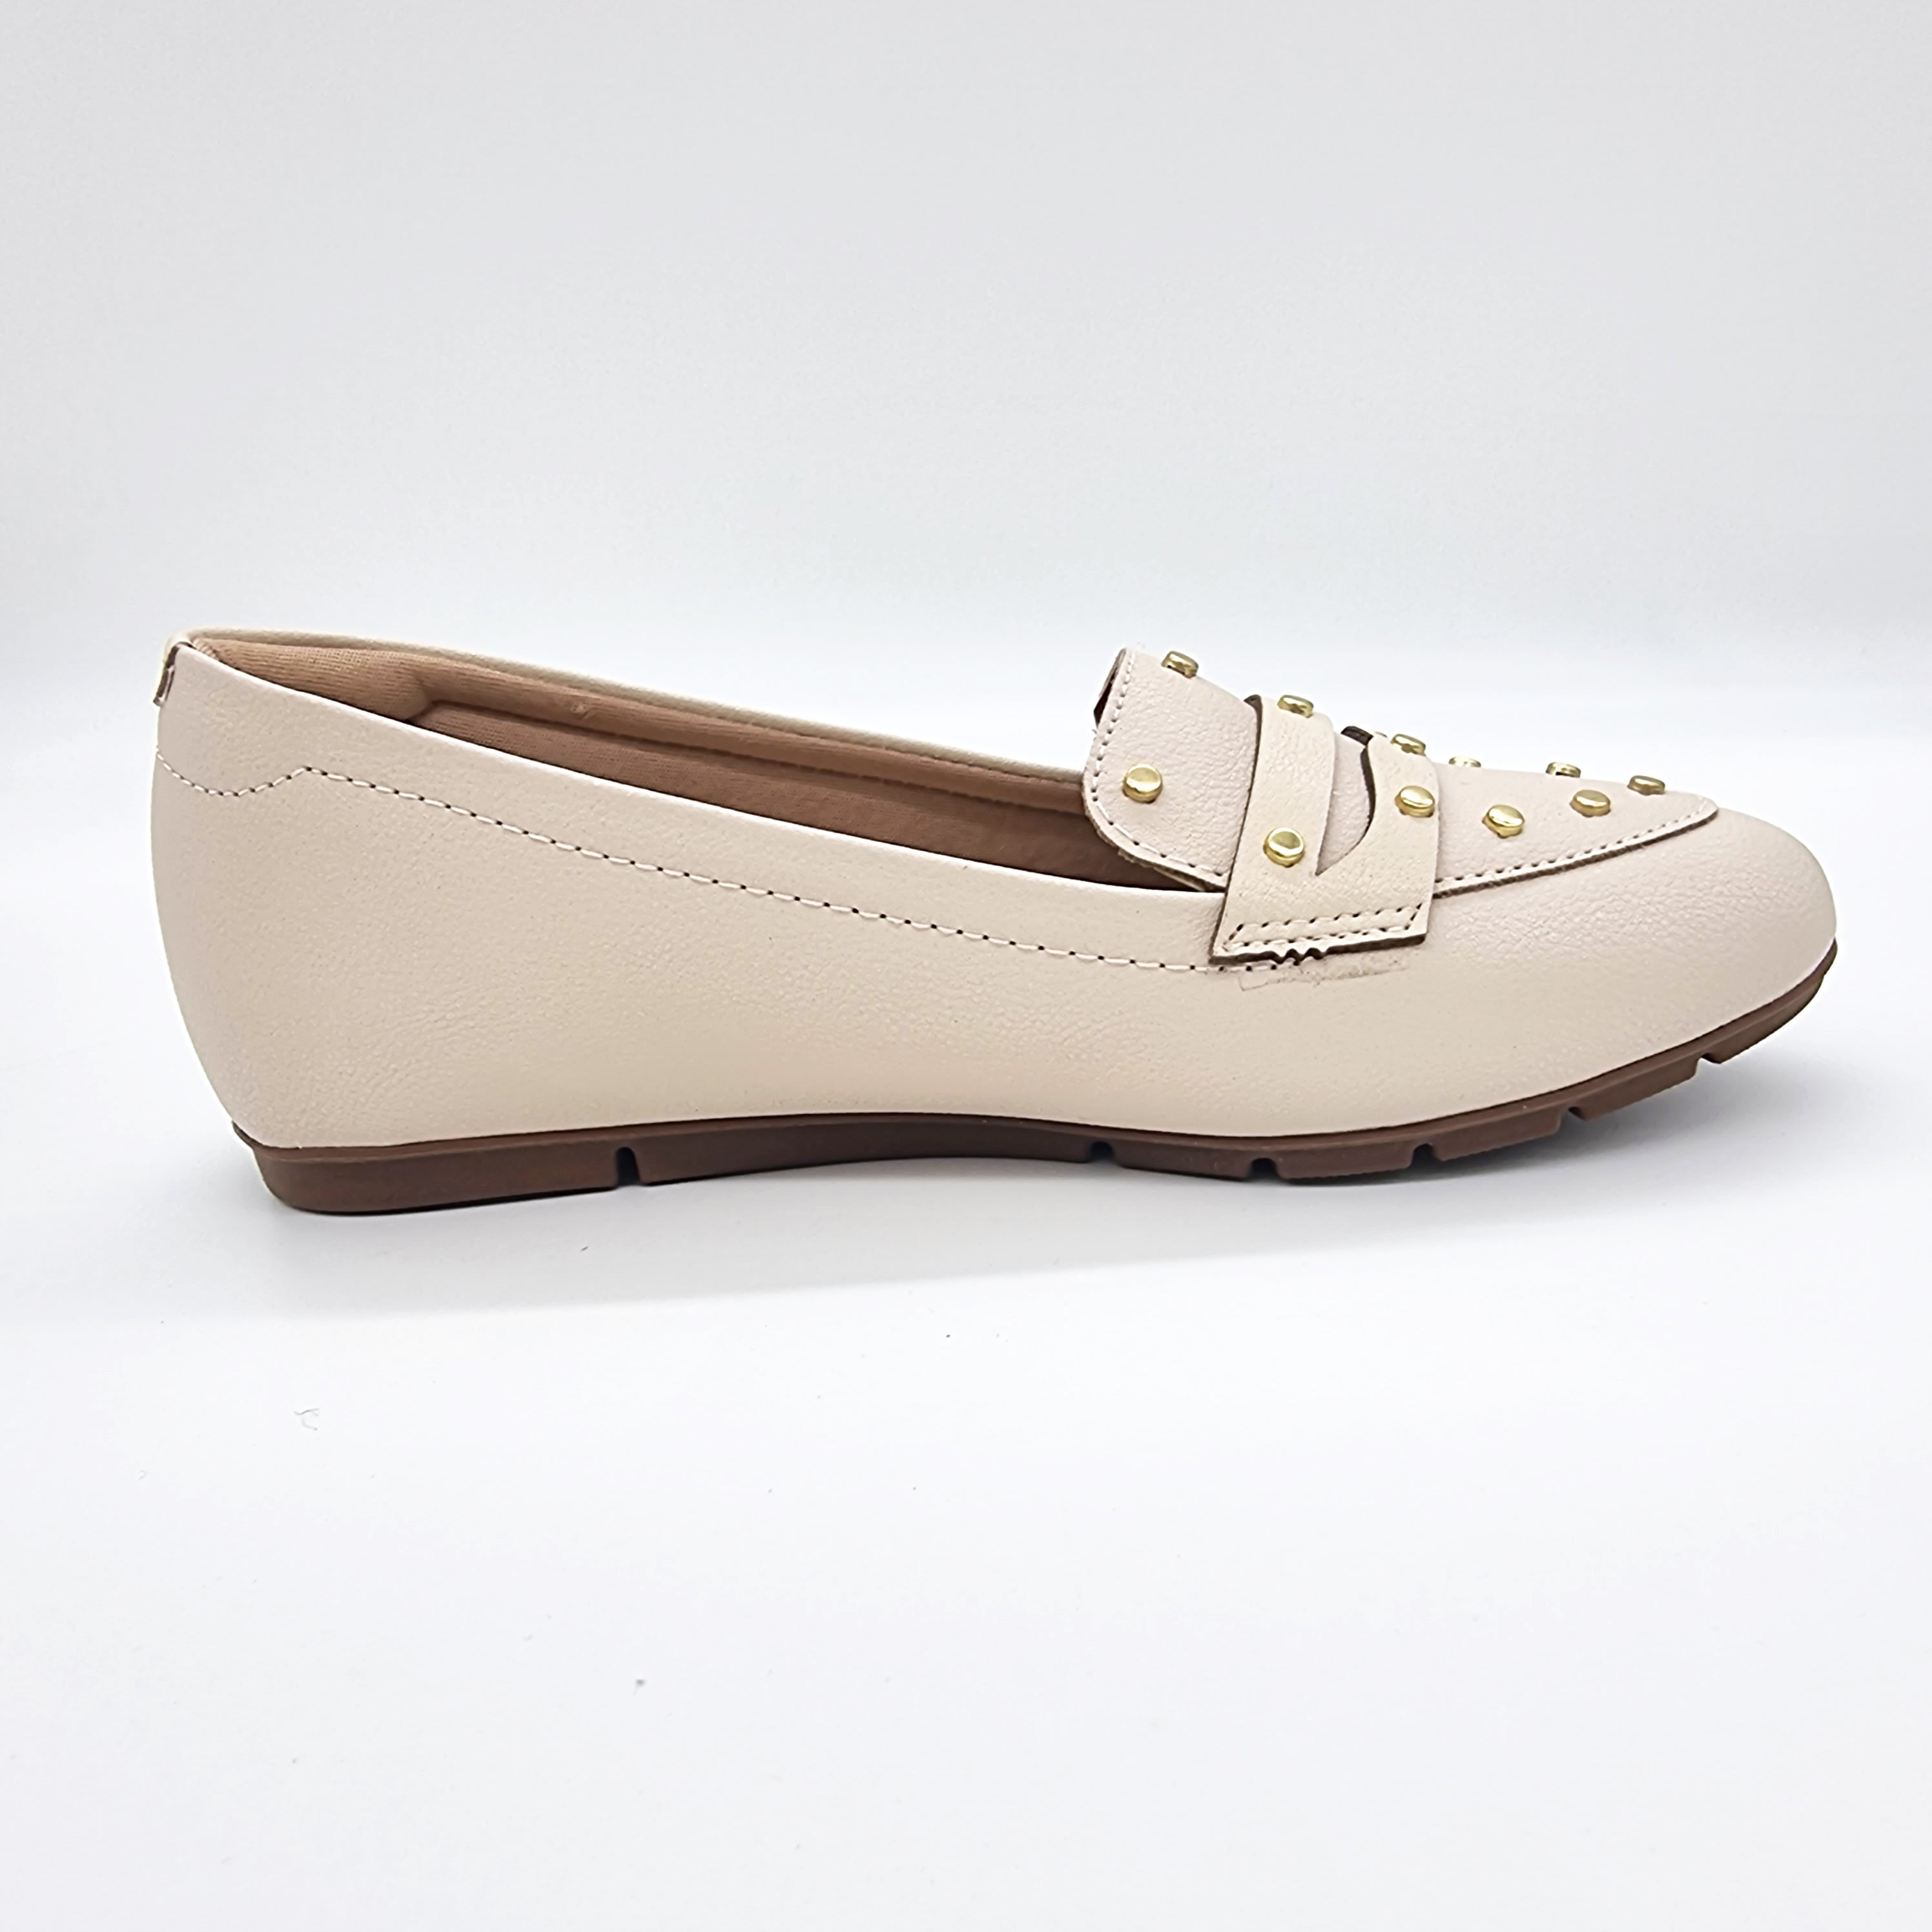 Modare 7385-104 Round Toe Flat Loafer in Cream Napa